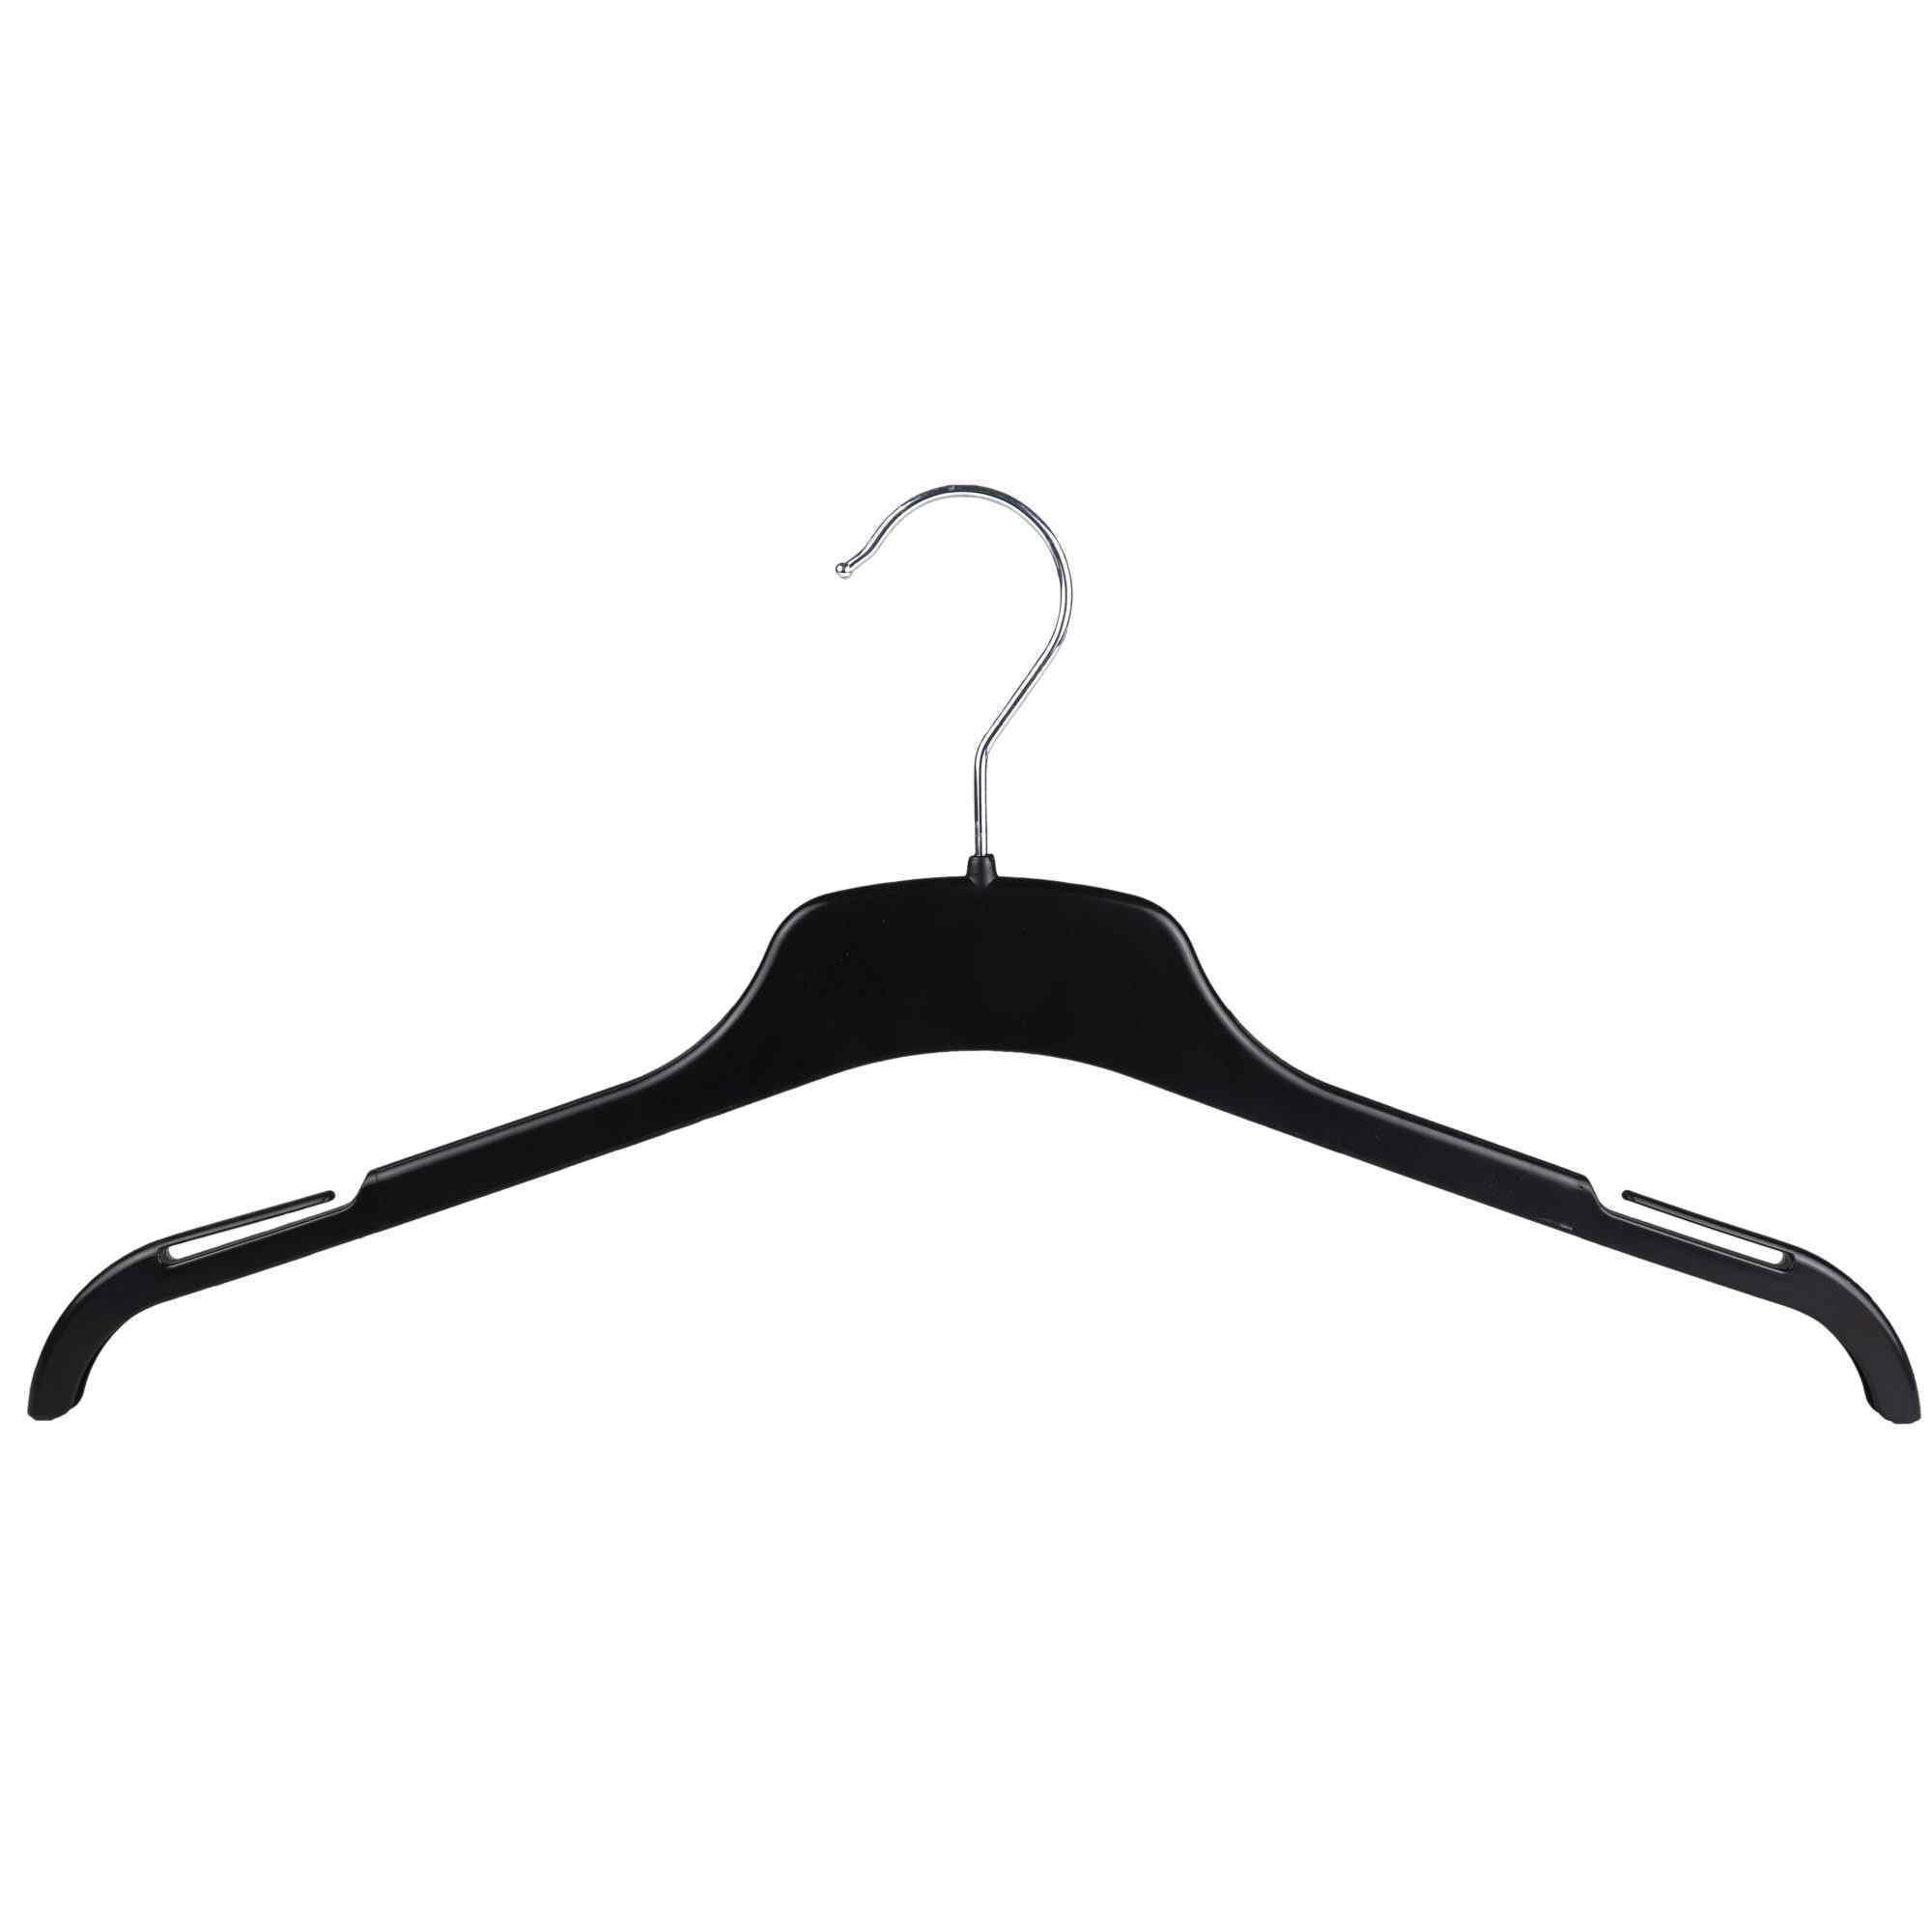 Hanger - EC43 Black Plastic Blouse Hanger w/Hook